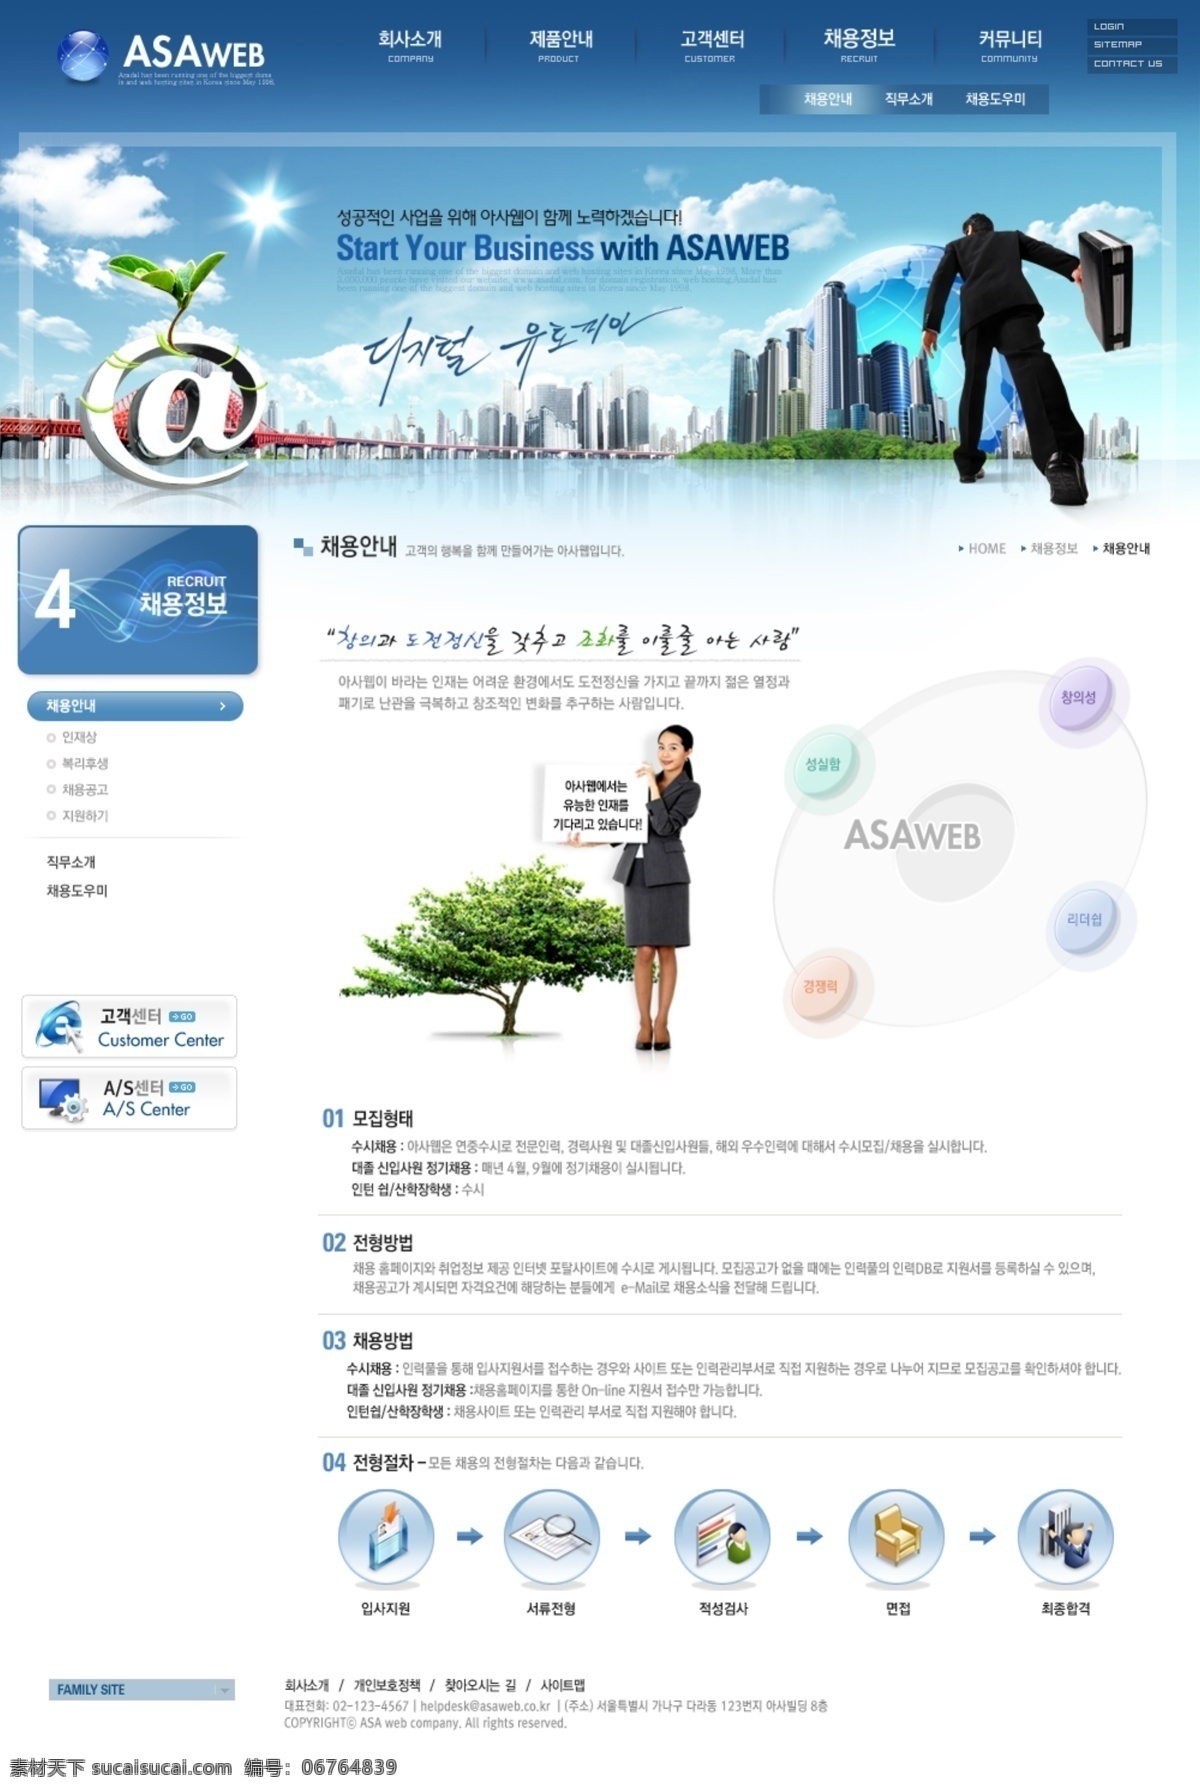 蓝色 韩国 商务 网页模板 套装 韩国模板 源文件库 韩国商务 网页素材